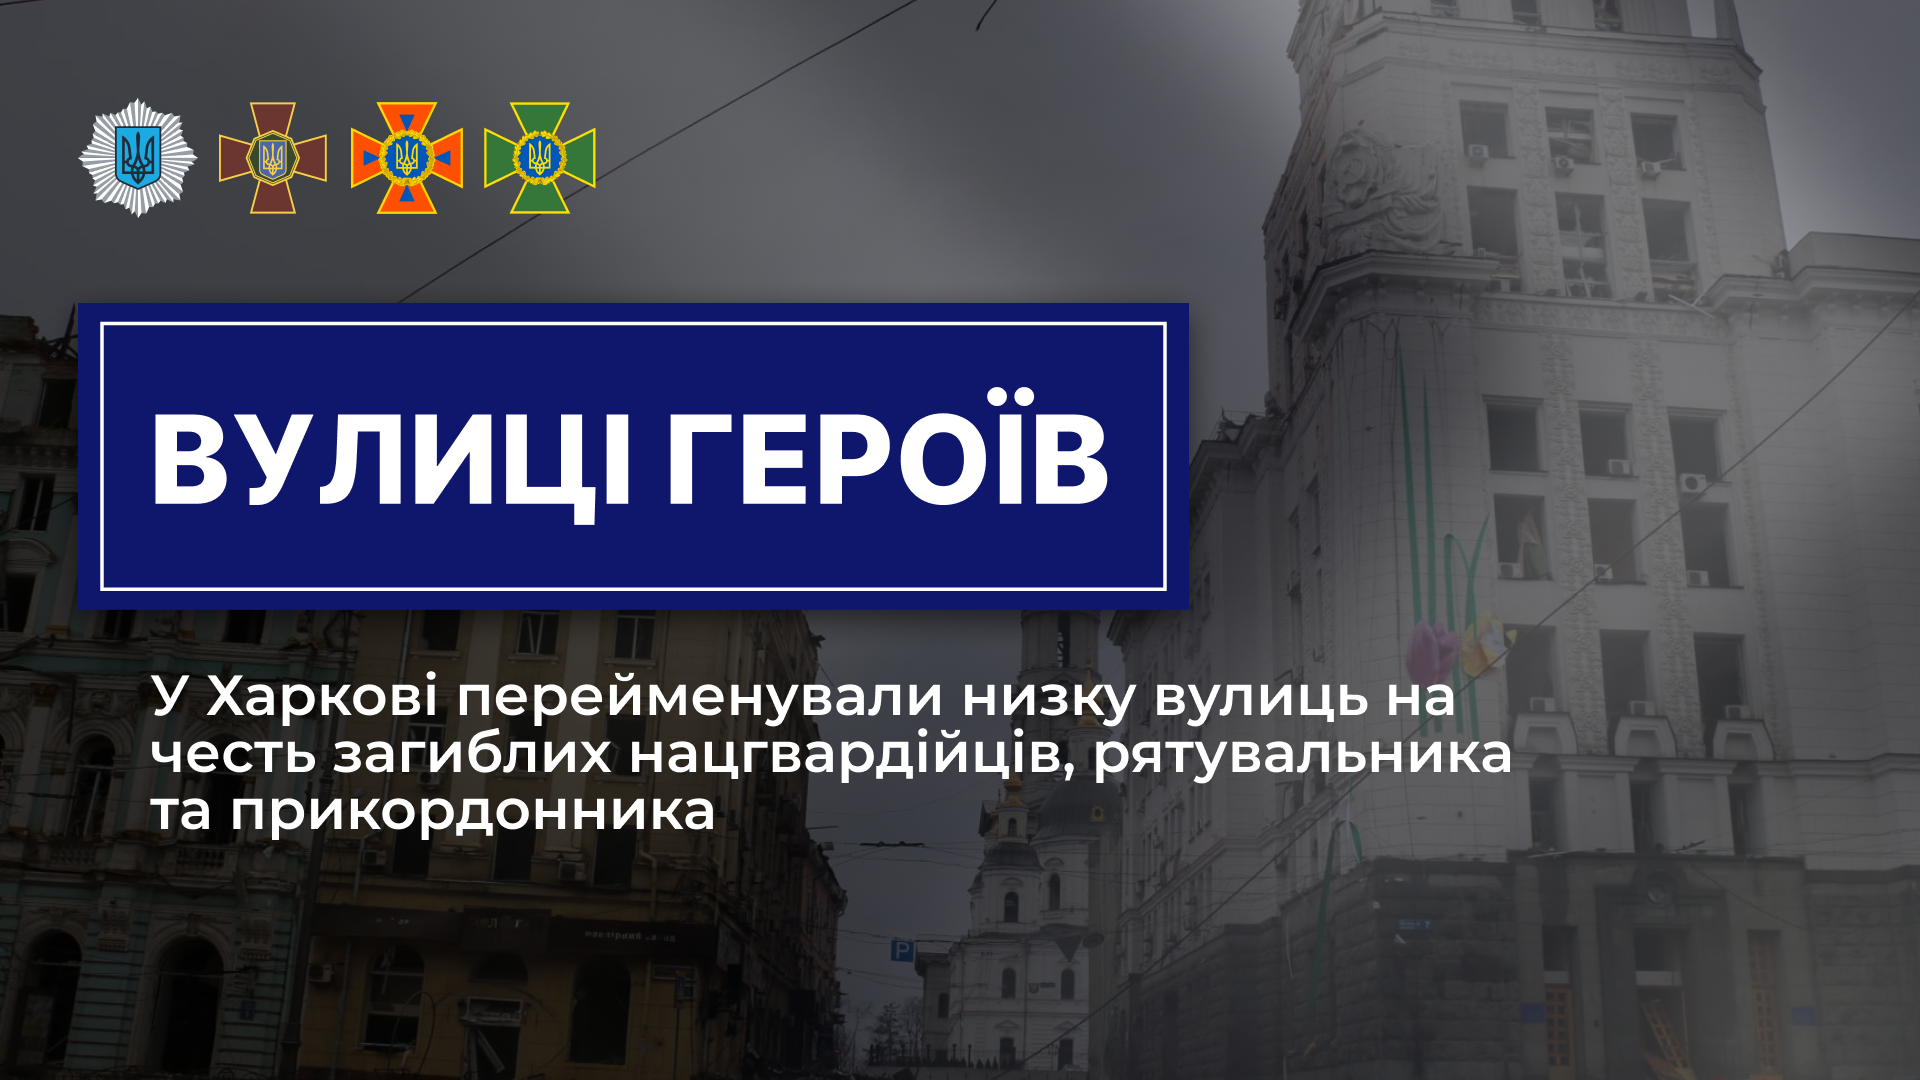 Сім вулиць Харкова перейменували на честь загиблих героїв системи МВС